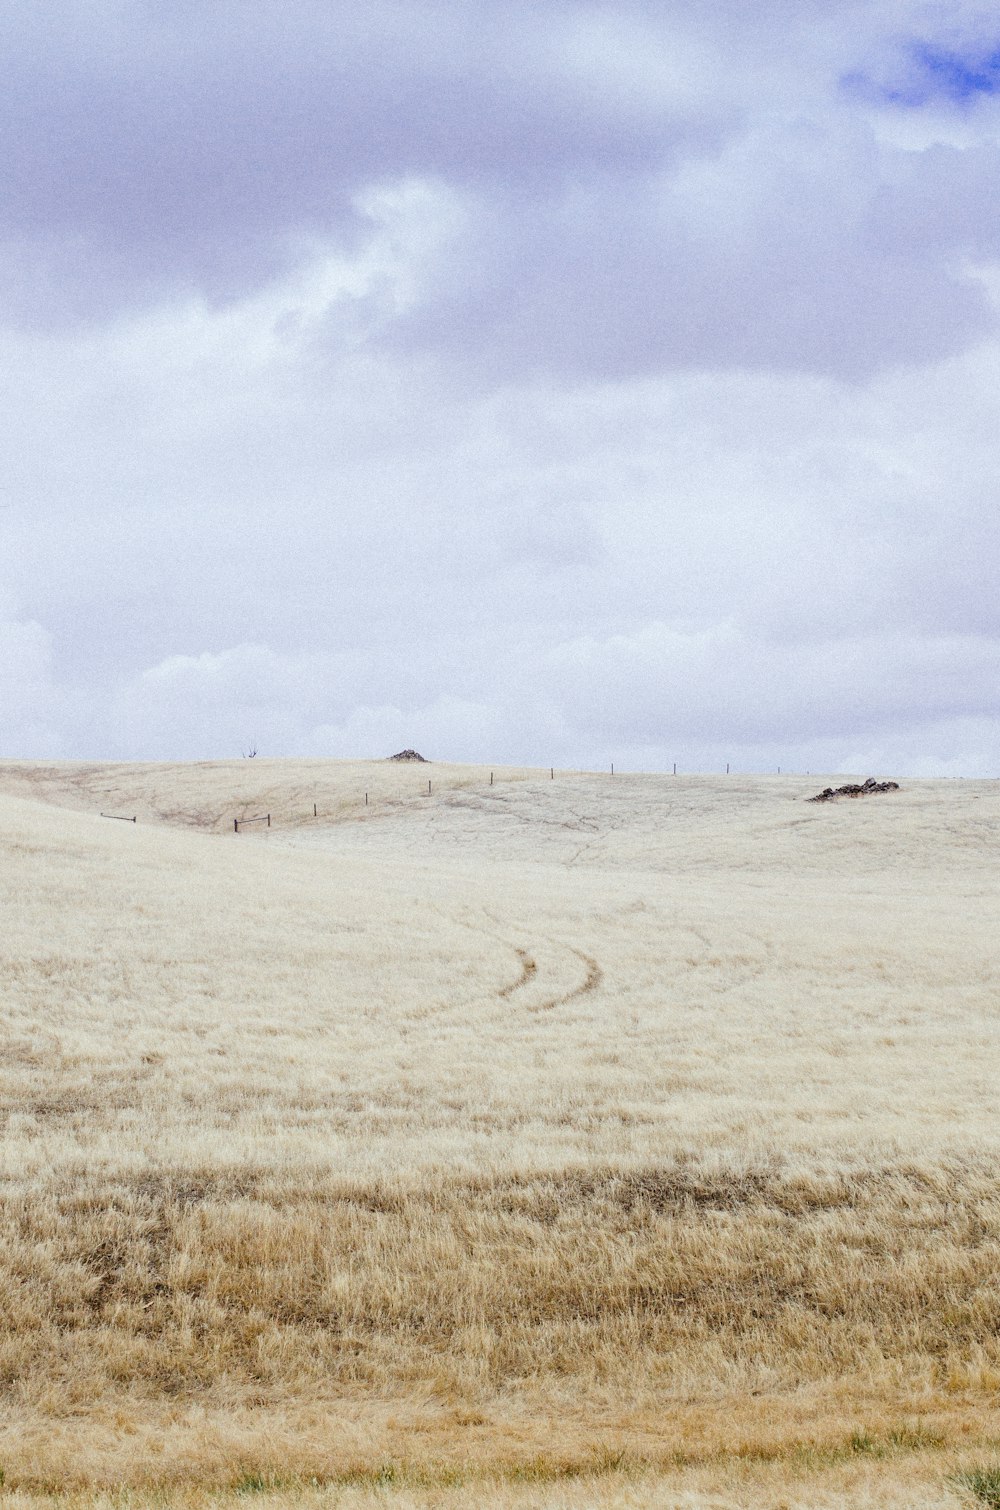 colina de hierba marrón bajo nubes blancas durante el día